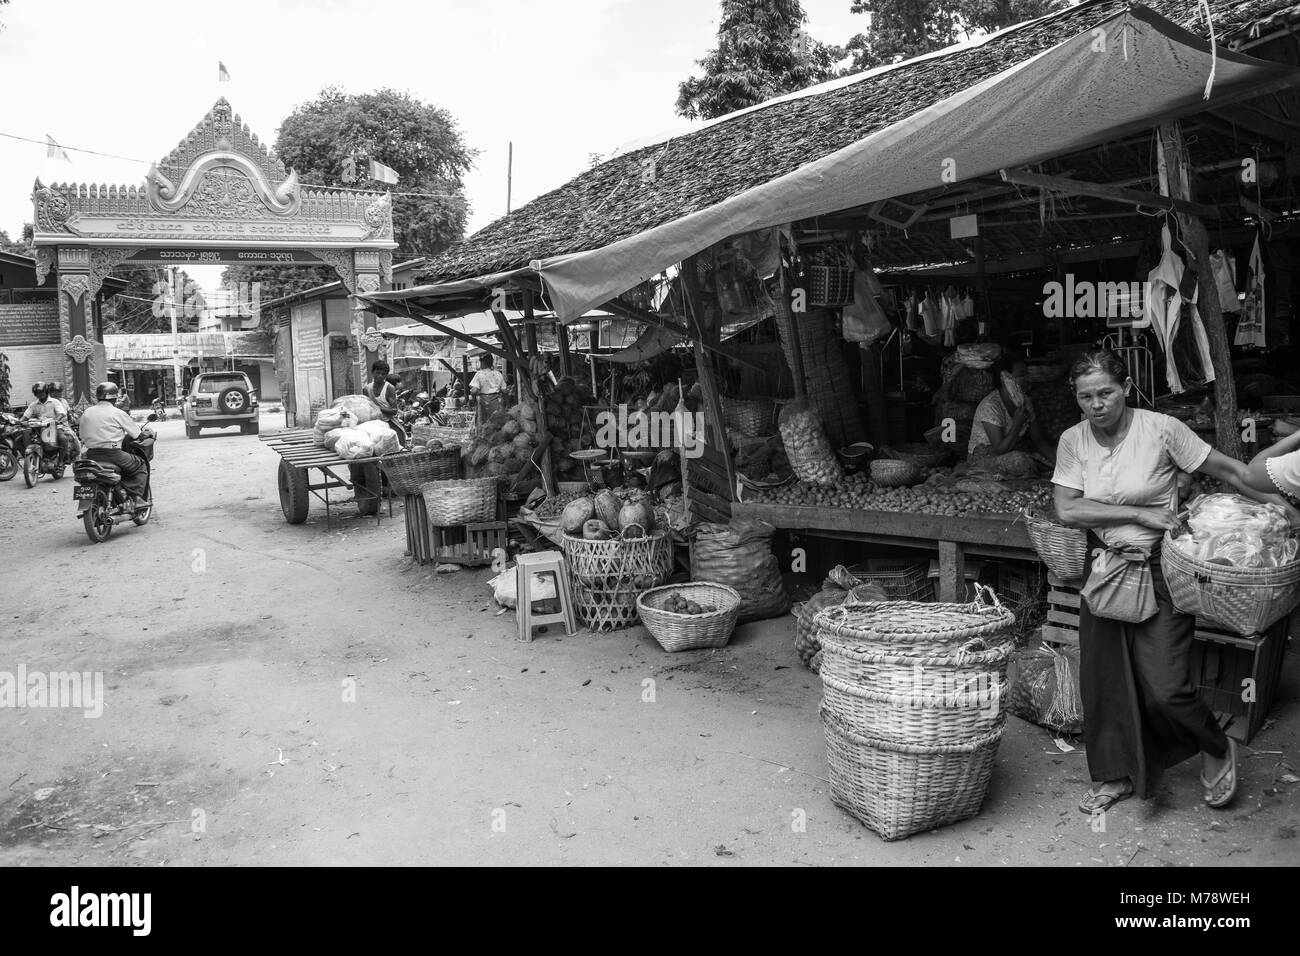 Die BURMESISCHE asiatischen Markt Nyaung U in der Nähe von Bagan, Myanmar. Marktstand verkaufen Obst, Gemüse und Nüsse Frau, die ihr Zuckerrohr Korb zu Burma. Stockfoto